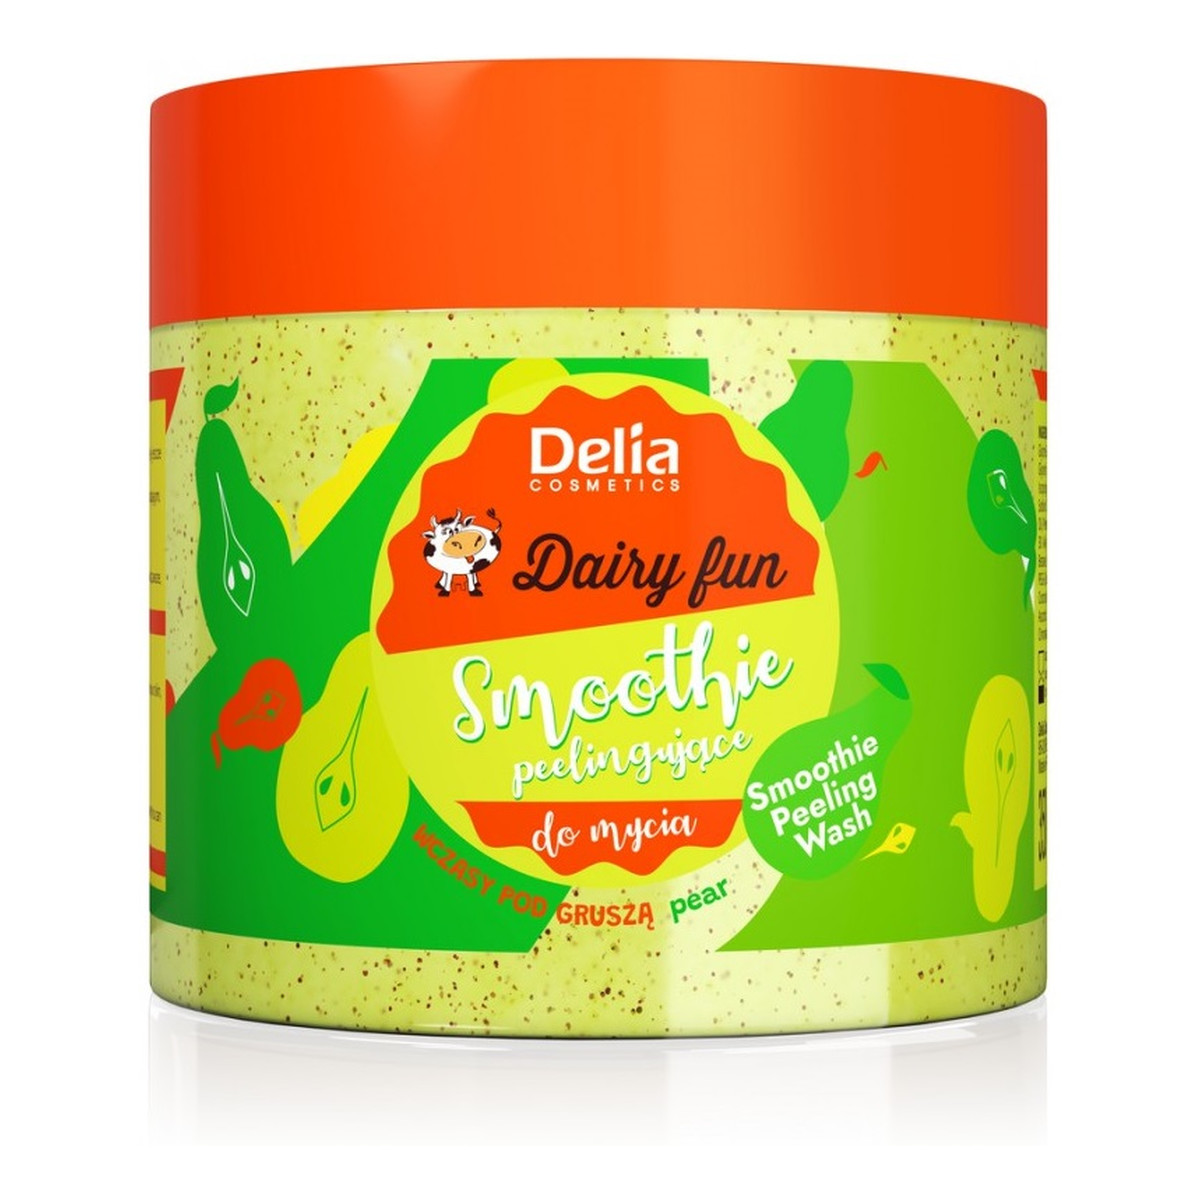 Delia Dairy Fun Peelingujące smoothie do mycia ciała Wczasy Pod Gruszą 350ml